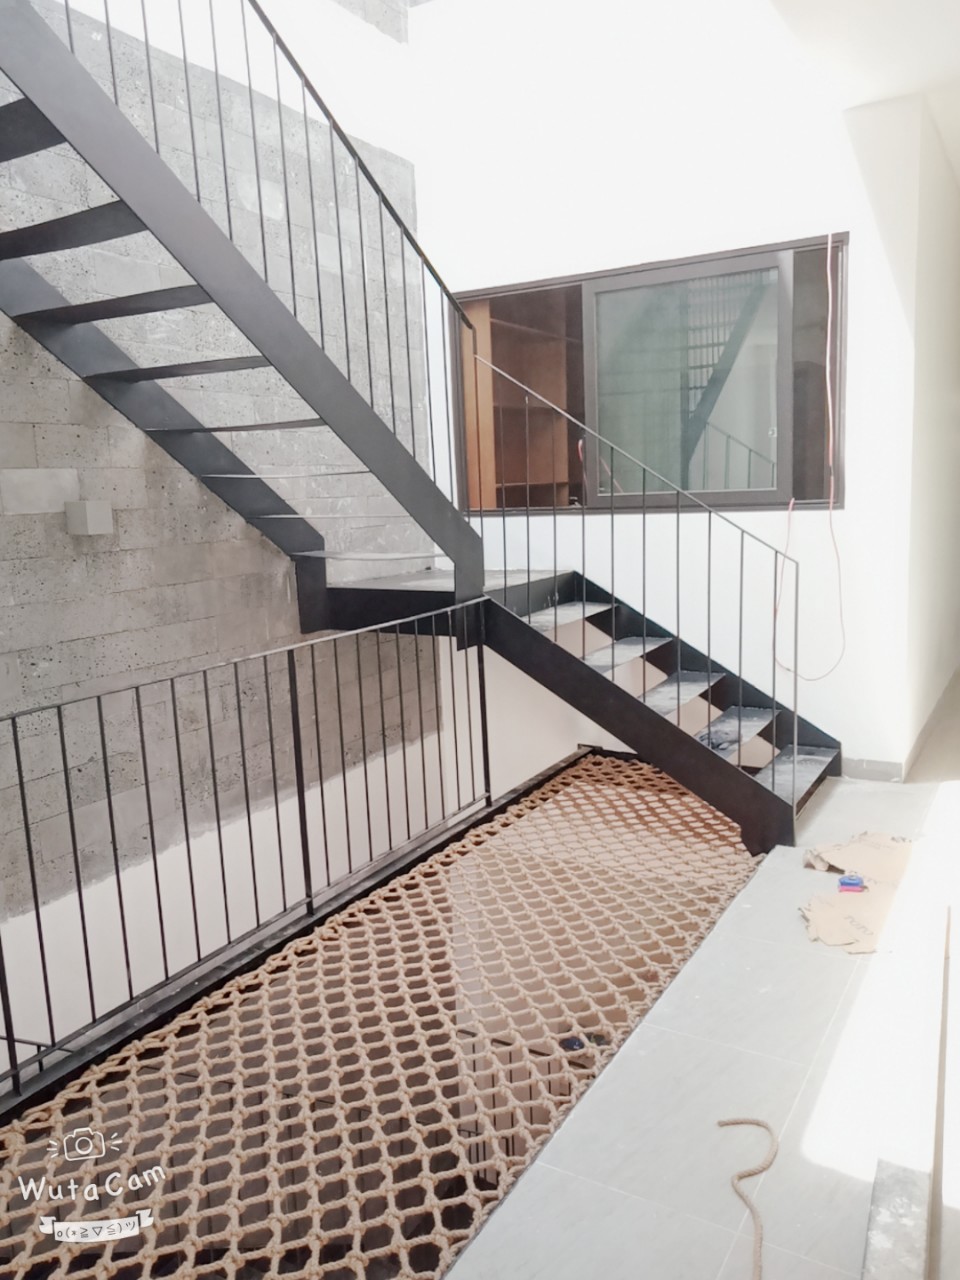 Lưới giếng trời cầu thang:
Lưới giếng trời cầu thang là một phụ kiện tuyệt vời giúp tạo ra sự thanh lịch và tinh tế cho cầu thang và không gian bên dưới. Với tính năng che chắn tốt và thiết kế độc đáo, lưới giếng trời cầu thang sẽ giúp cho ngôi nhà của bạn trở nên sang trọng và tinh tế hơn.